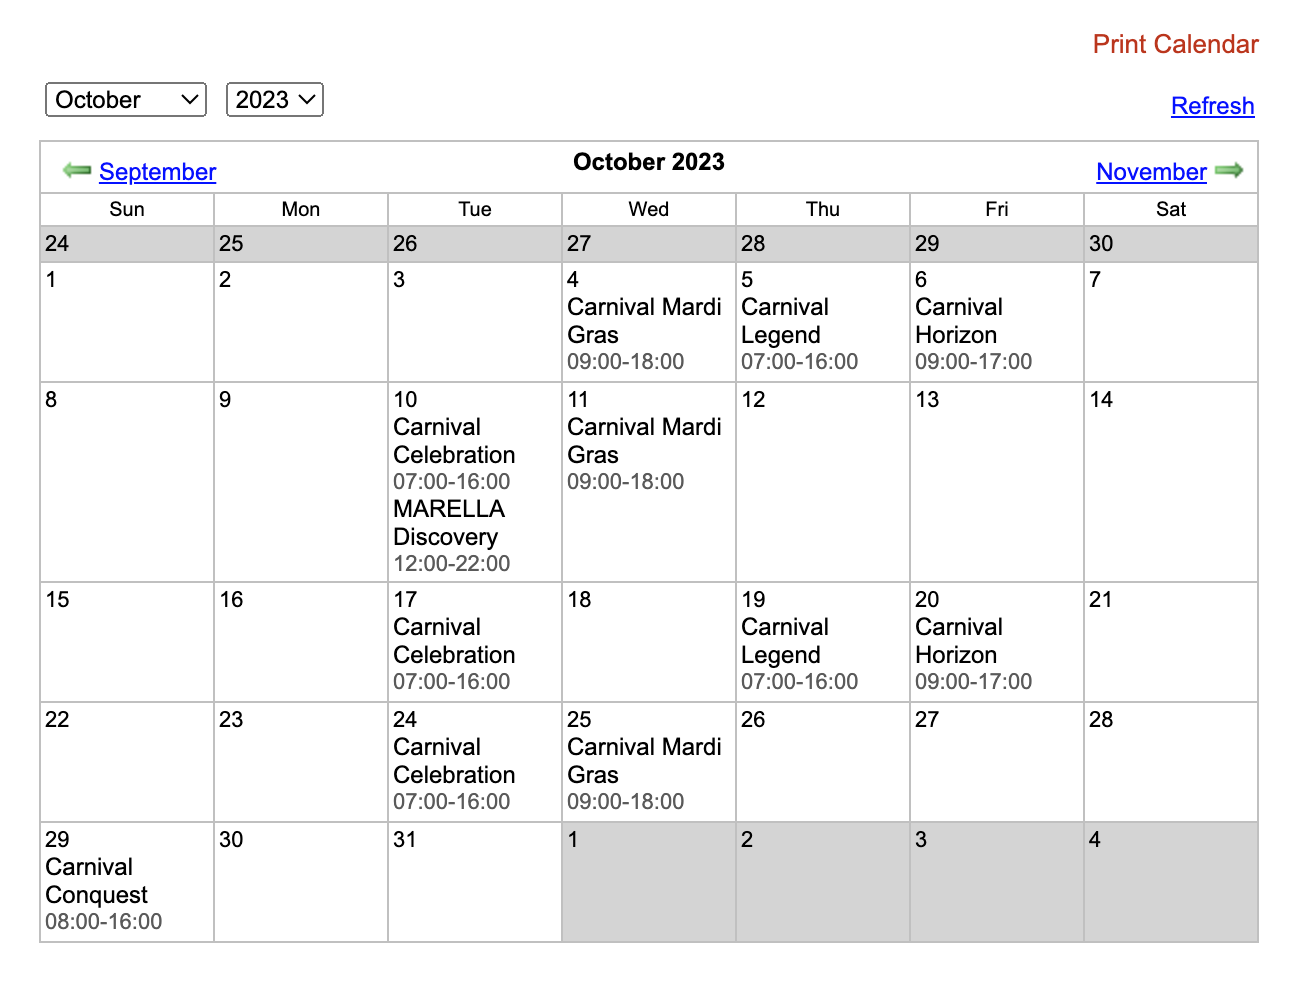 October Schedule